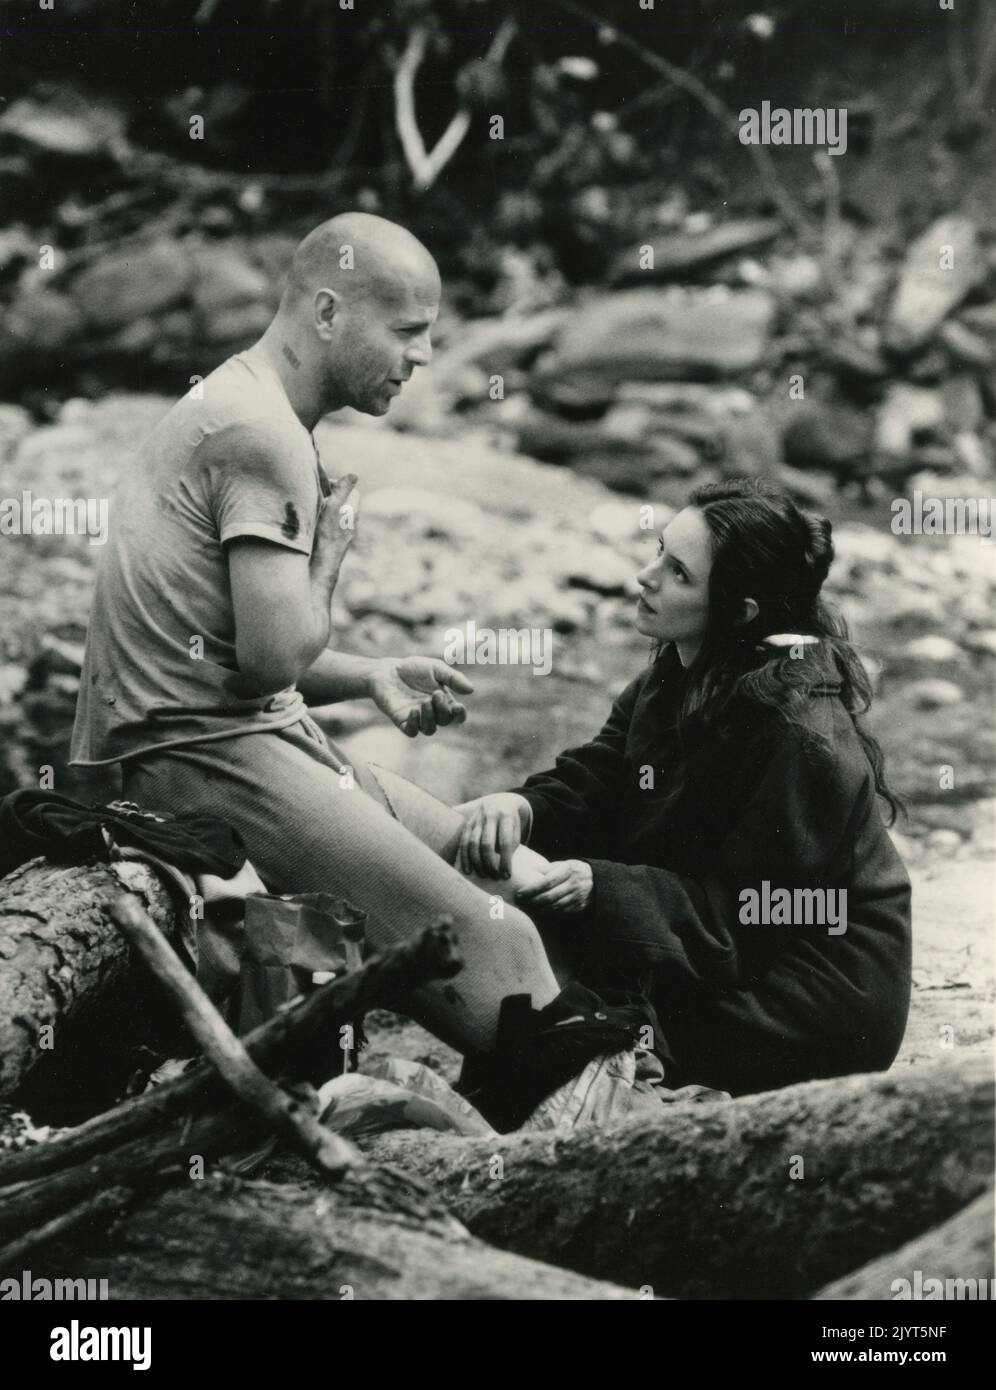 L'actrice américaine Madeleine Stowe et l'acteur Bruce Willis dans le film 12 Monkeys, USA 1995 Banque D'Images